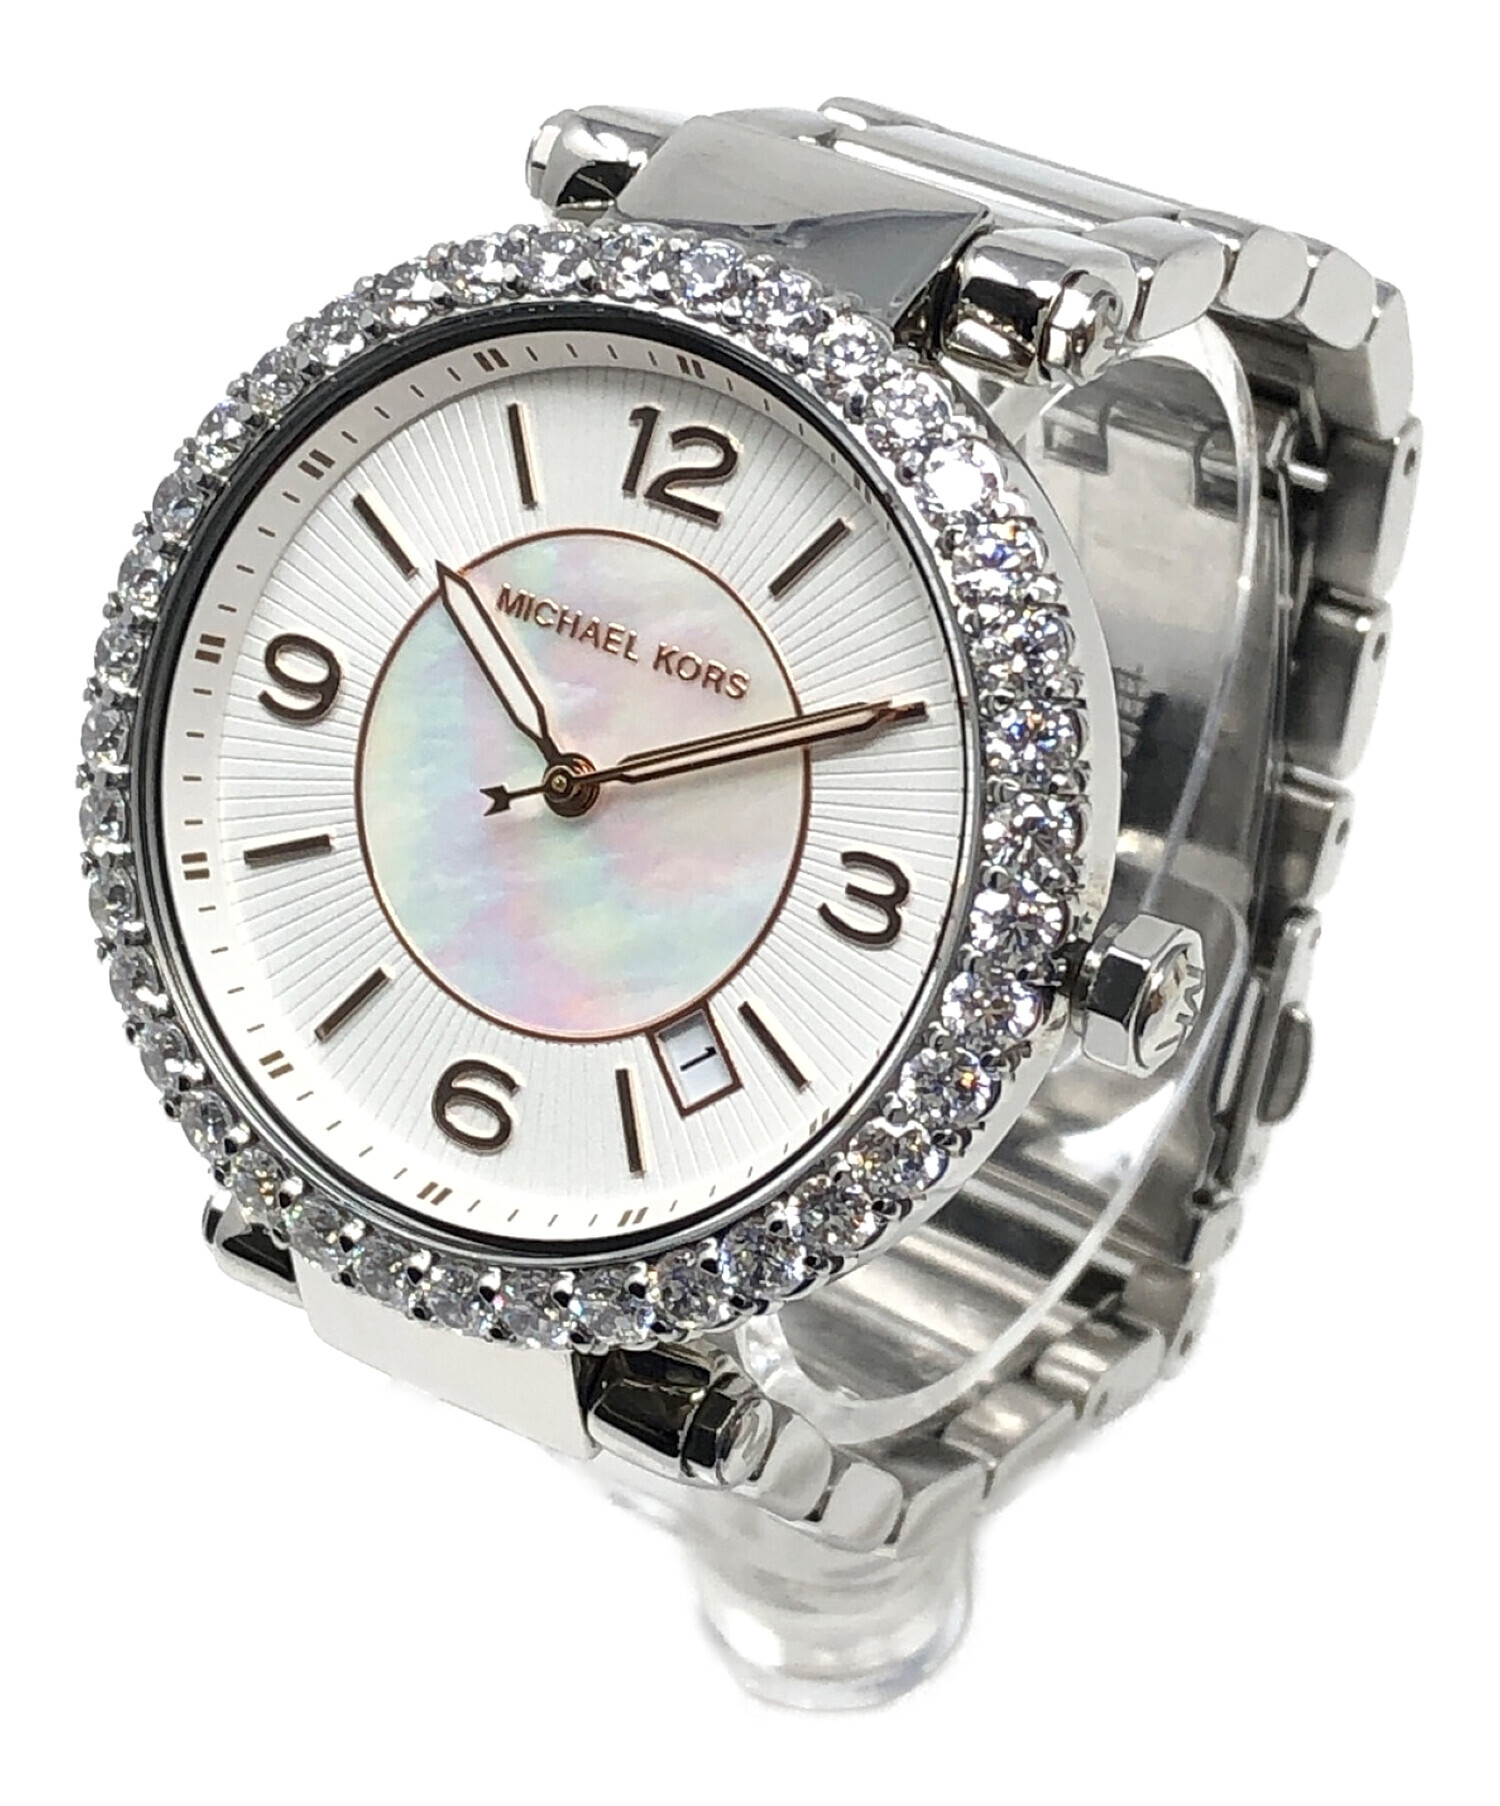 MICHAEL KORS (マイケルコース) 腕時計 クォーツ ホワイト サイズ:実寸サイズにてご確認ください。